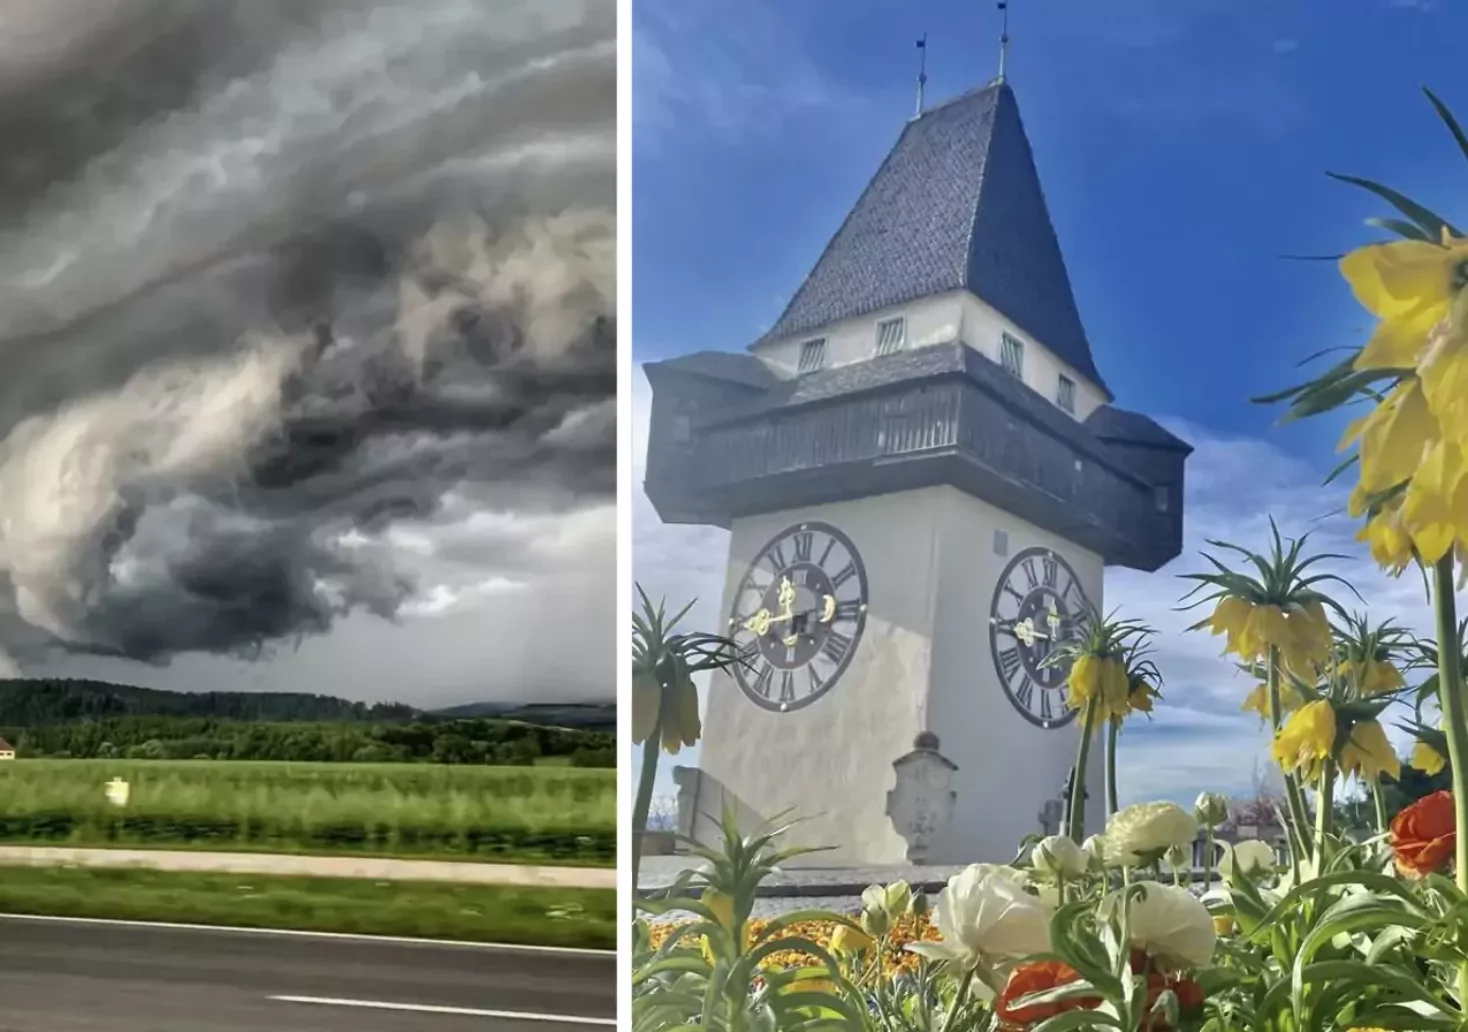 Foto auf 5min.at zeigt eine Wolke und den Grazer Uhrturm